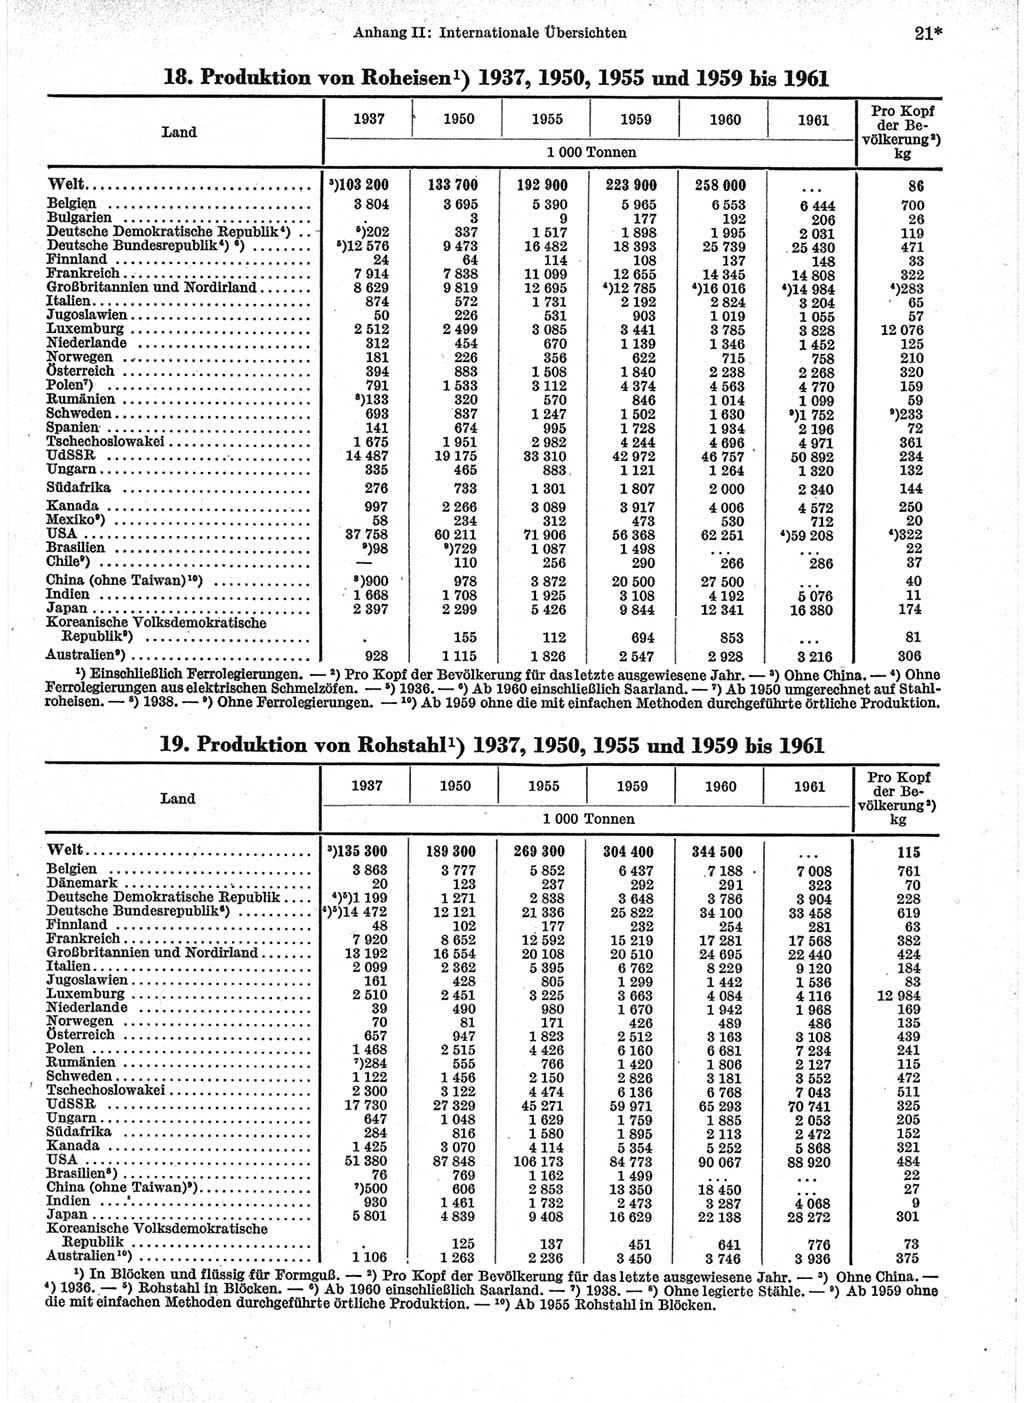 Statistisches Jahrbuch der Deutschen Demokratischen Republik (DDR) 1963, Seite 21 (Stat. Jb. DDR 1963, S. 21)